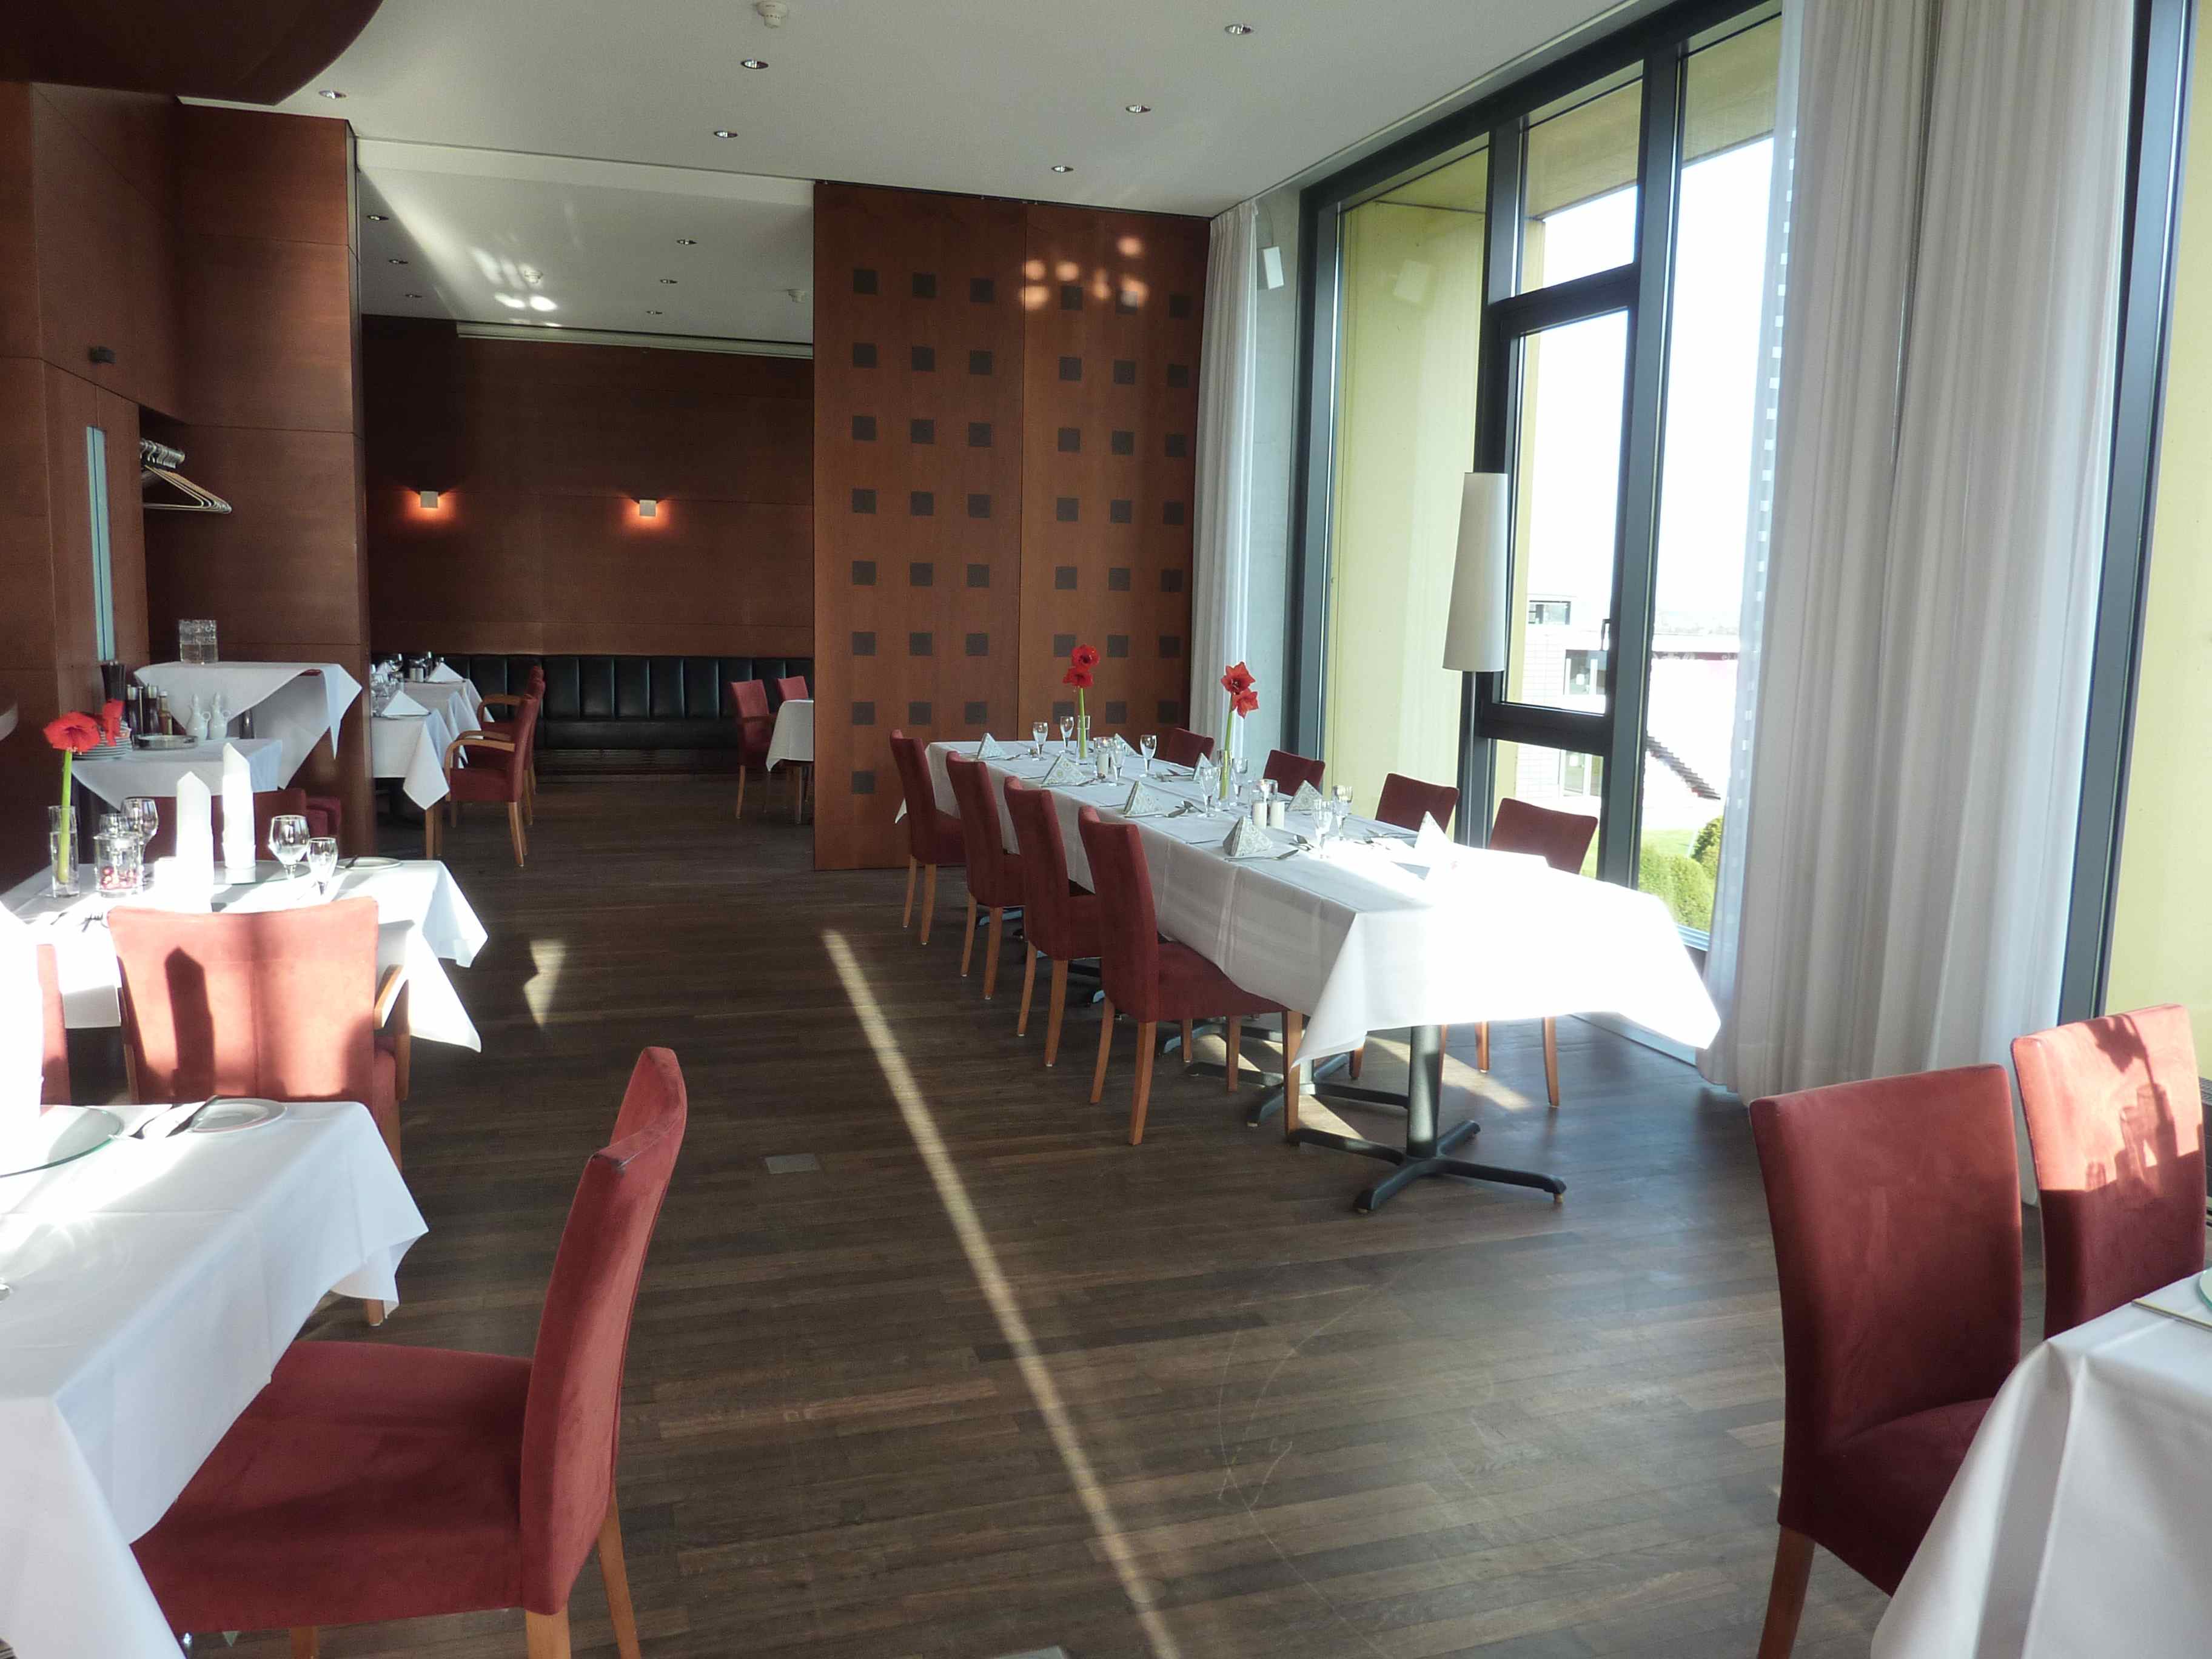 Best Western Hotel Lichtenwalde
Restaurant